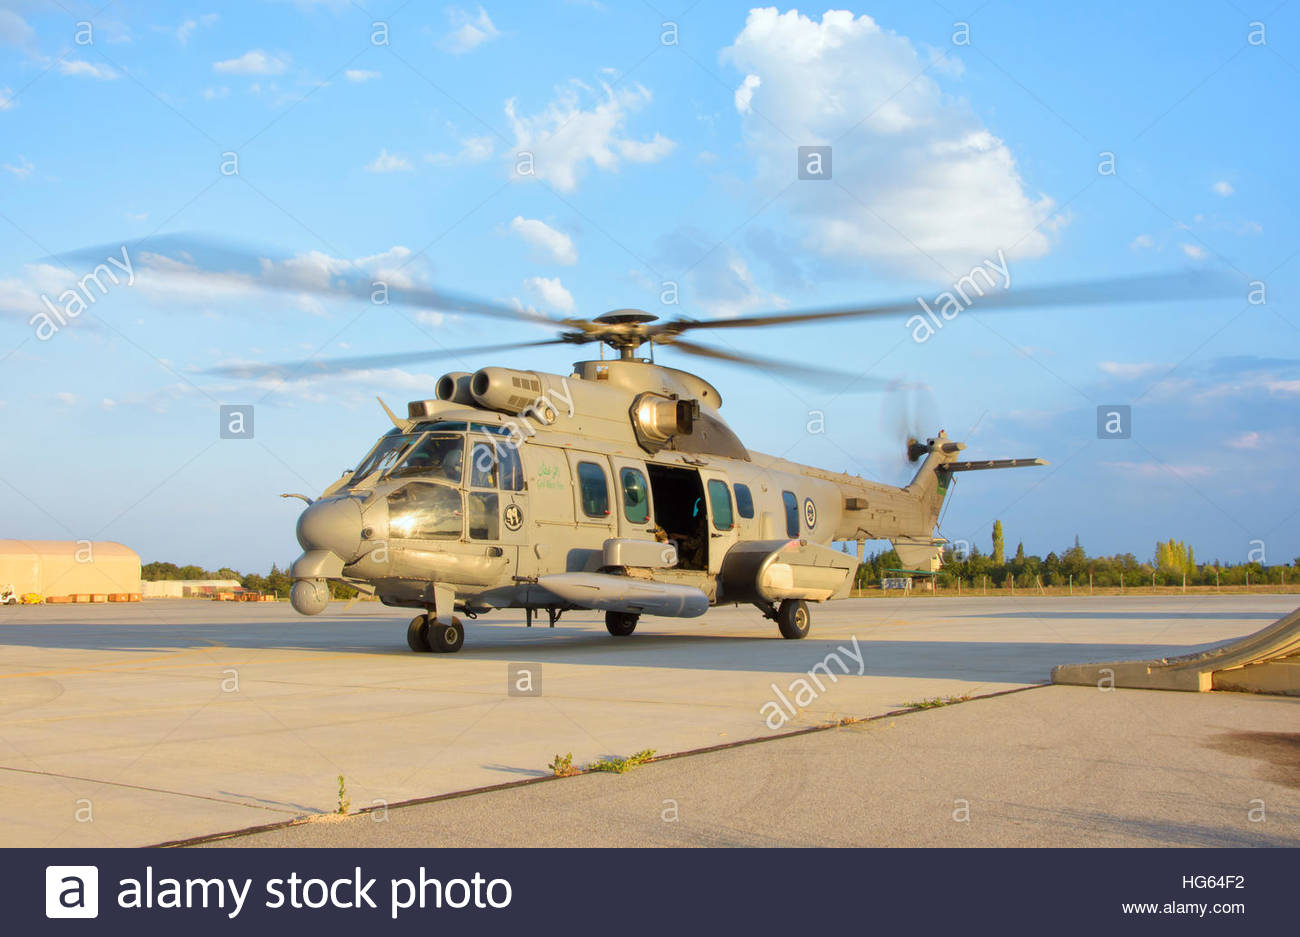 royal-saudi-air-force-as532-cougar-csar-helicopter-HG64F2.jpg